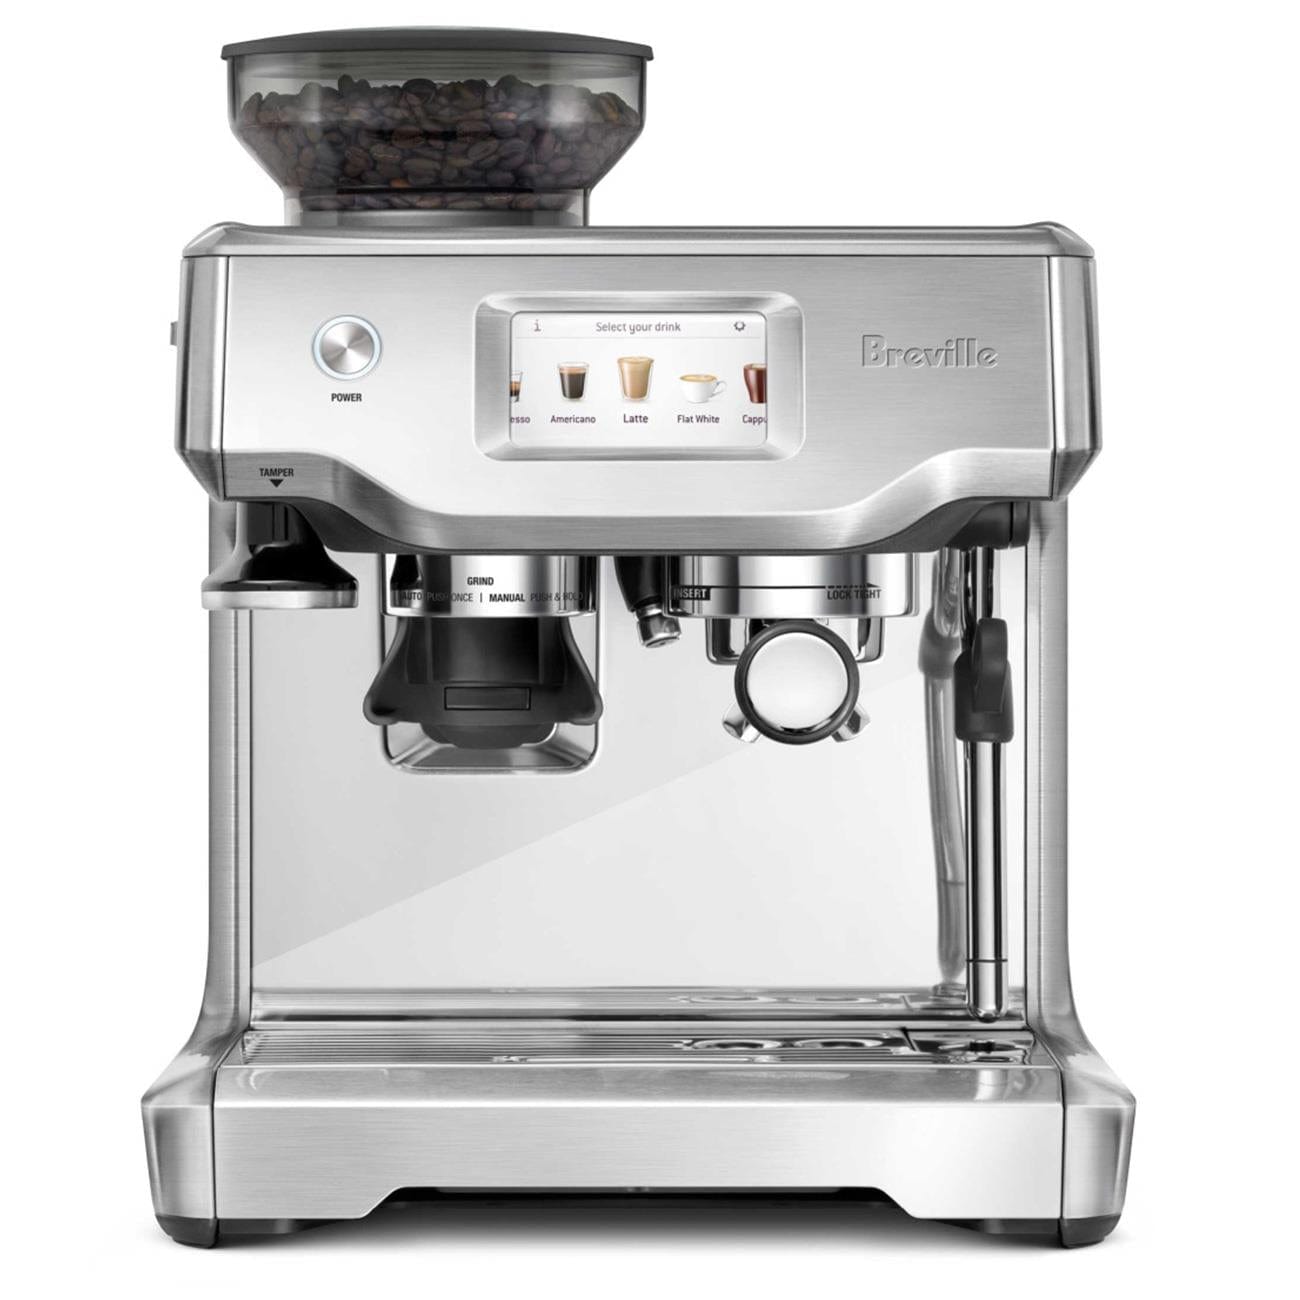 Espresso Machine the Barista Touch™
Breville